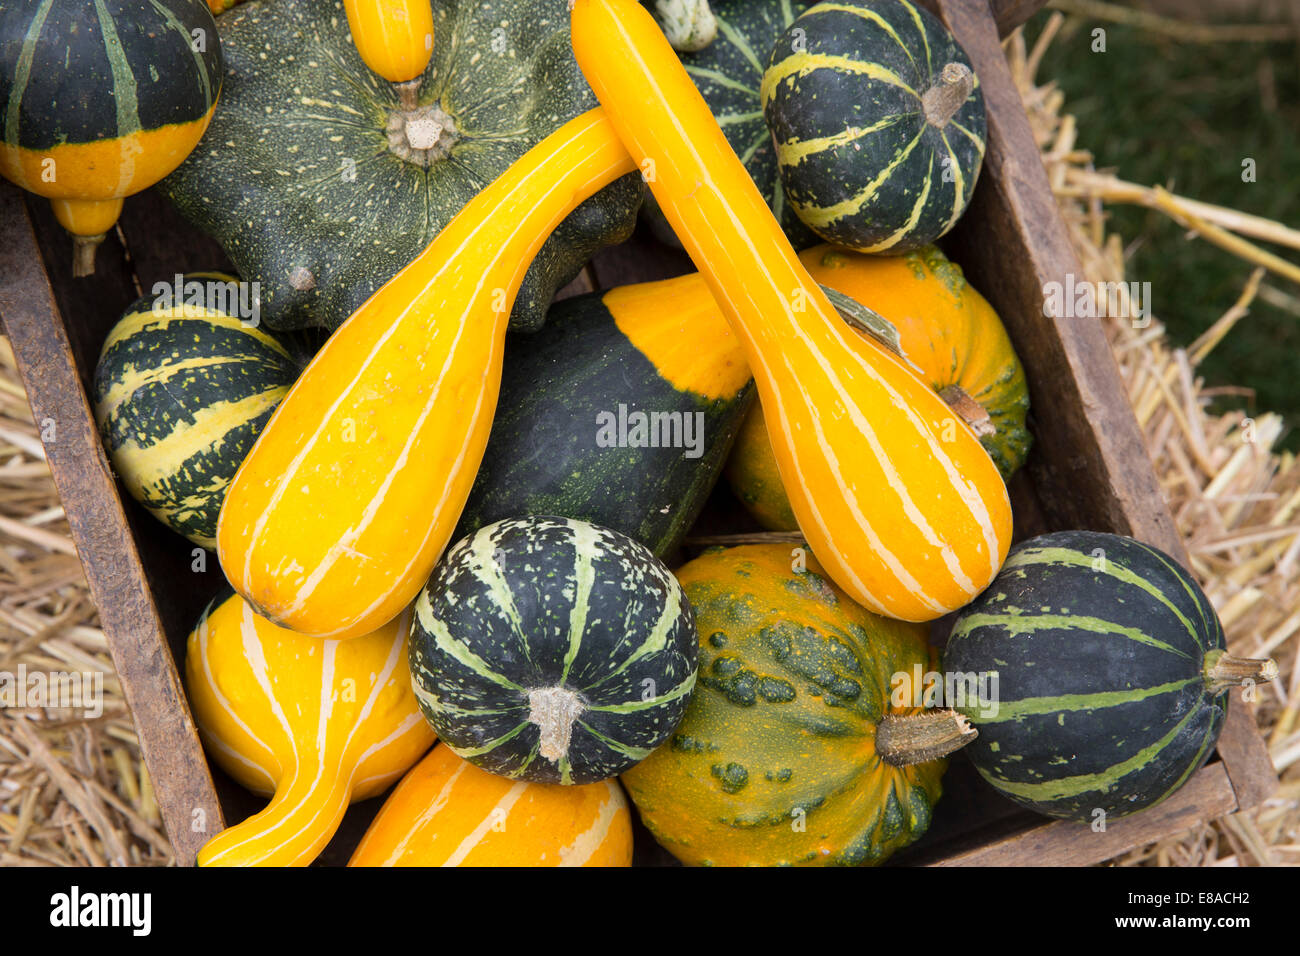 Malvern Autumn RHS show 2014 various gourds, pumpkins and squash Stock Photo